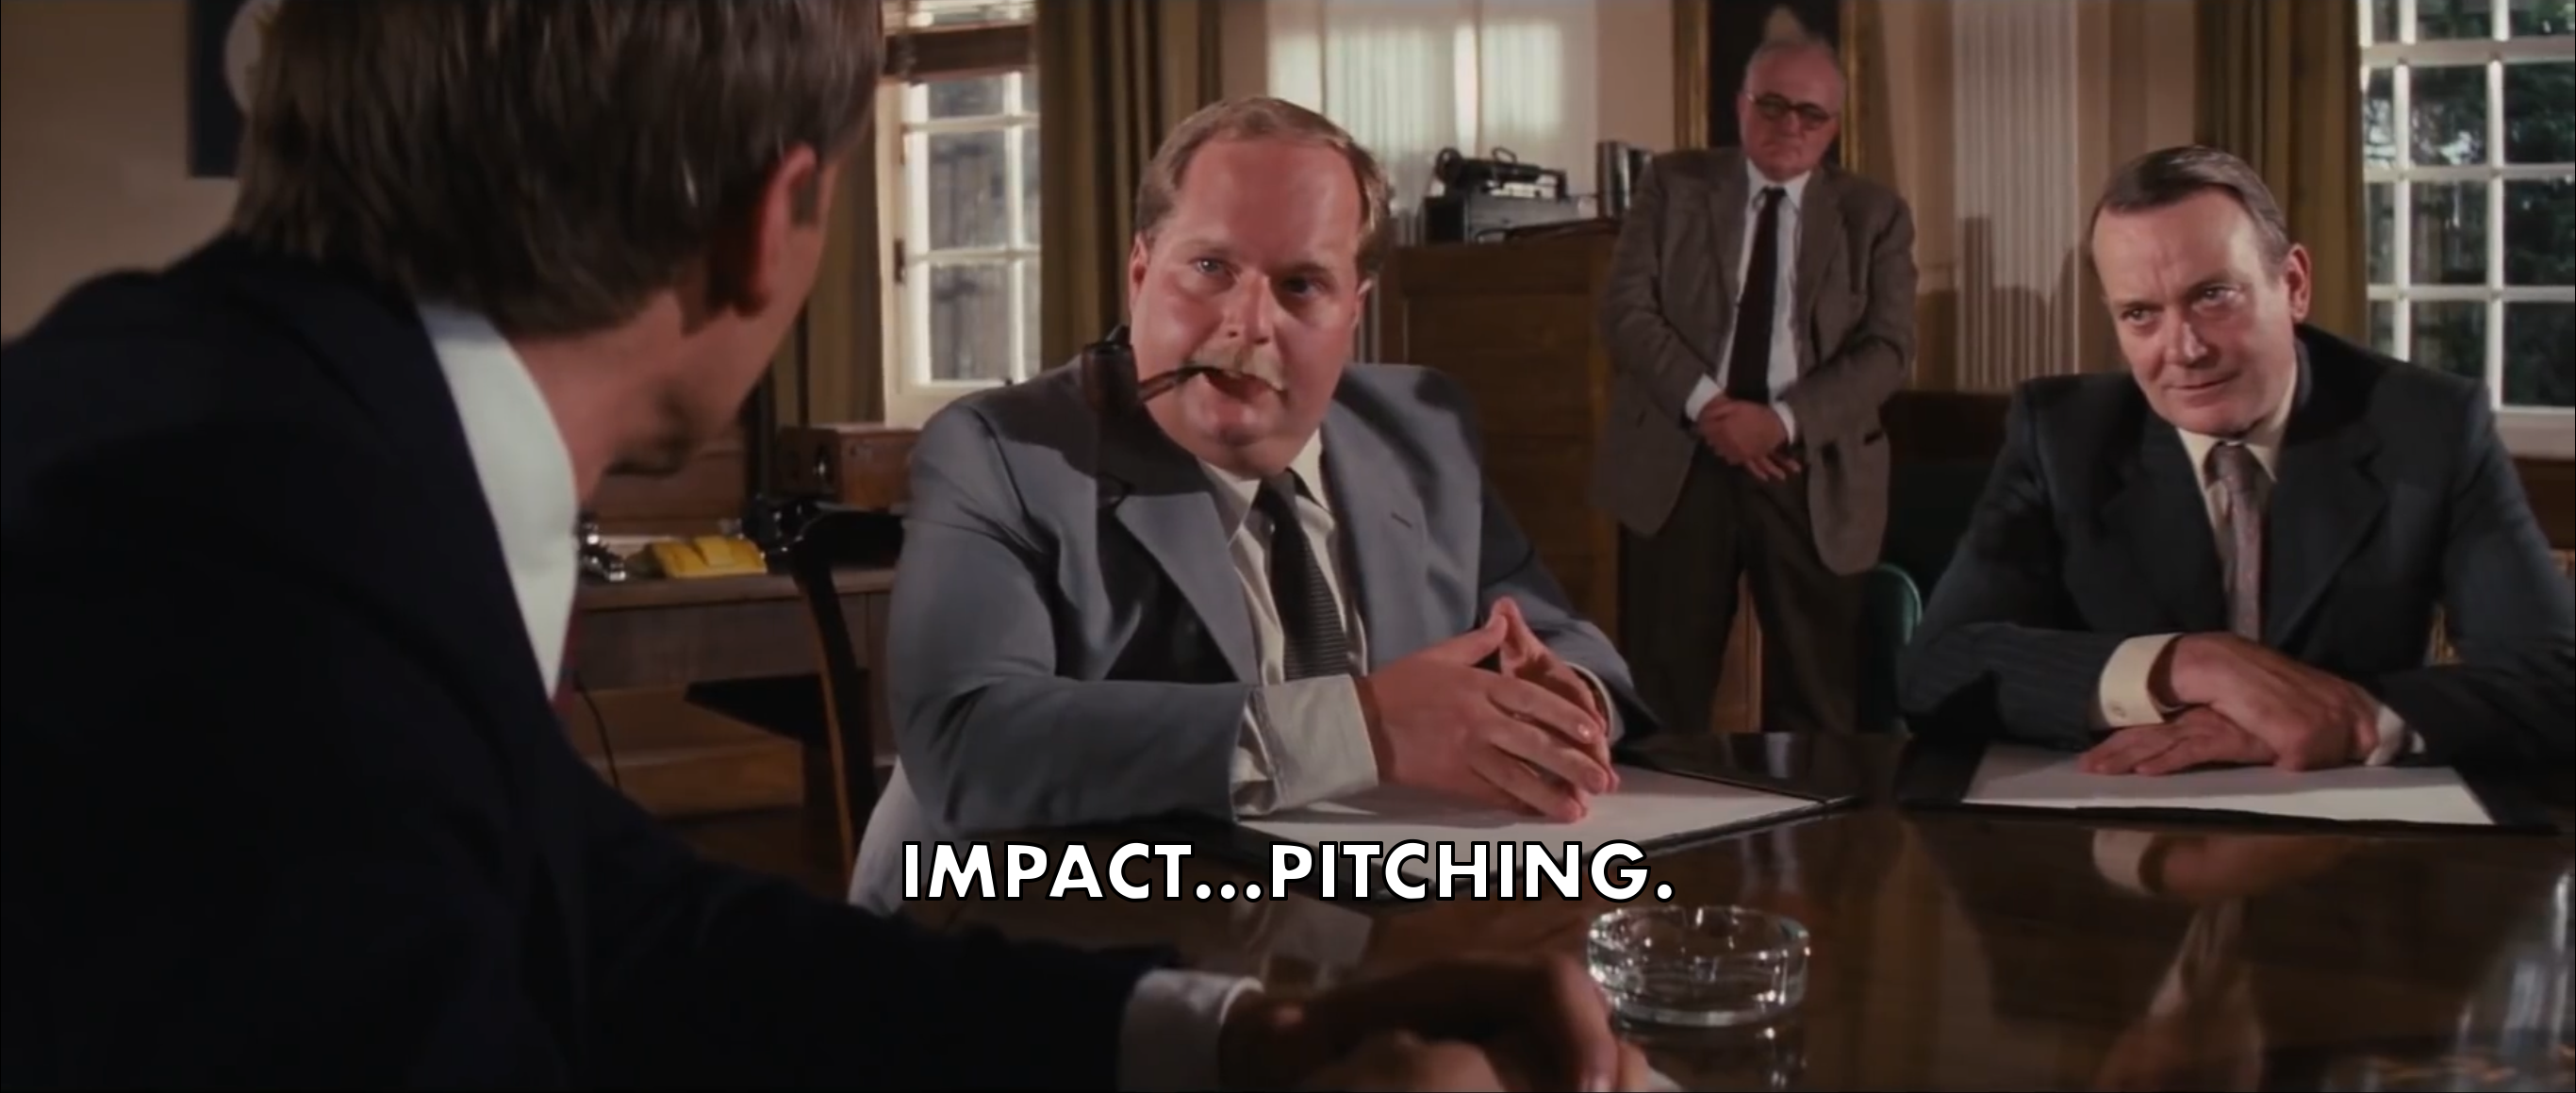 Impact...pitching.